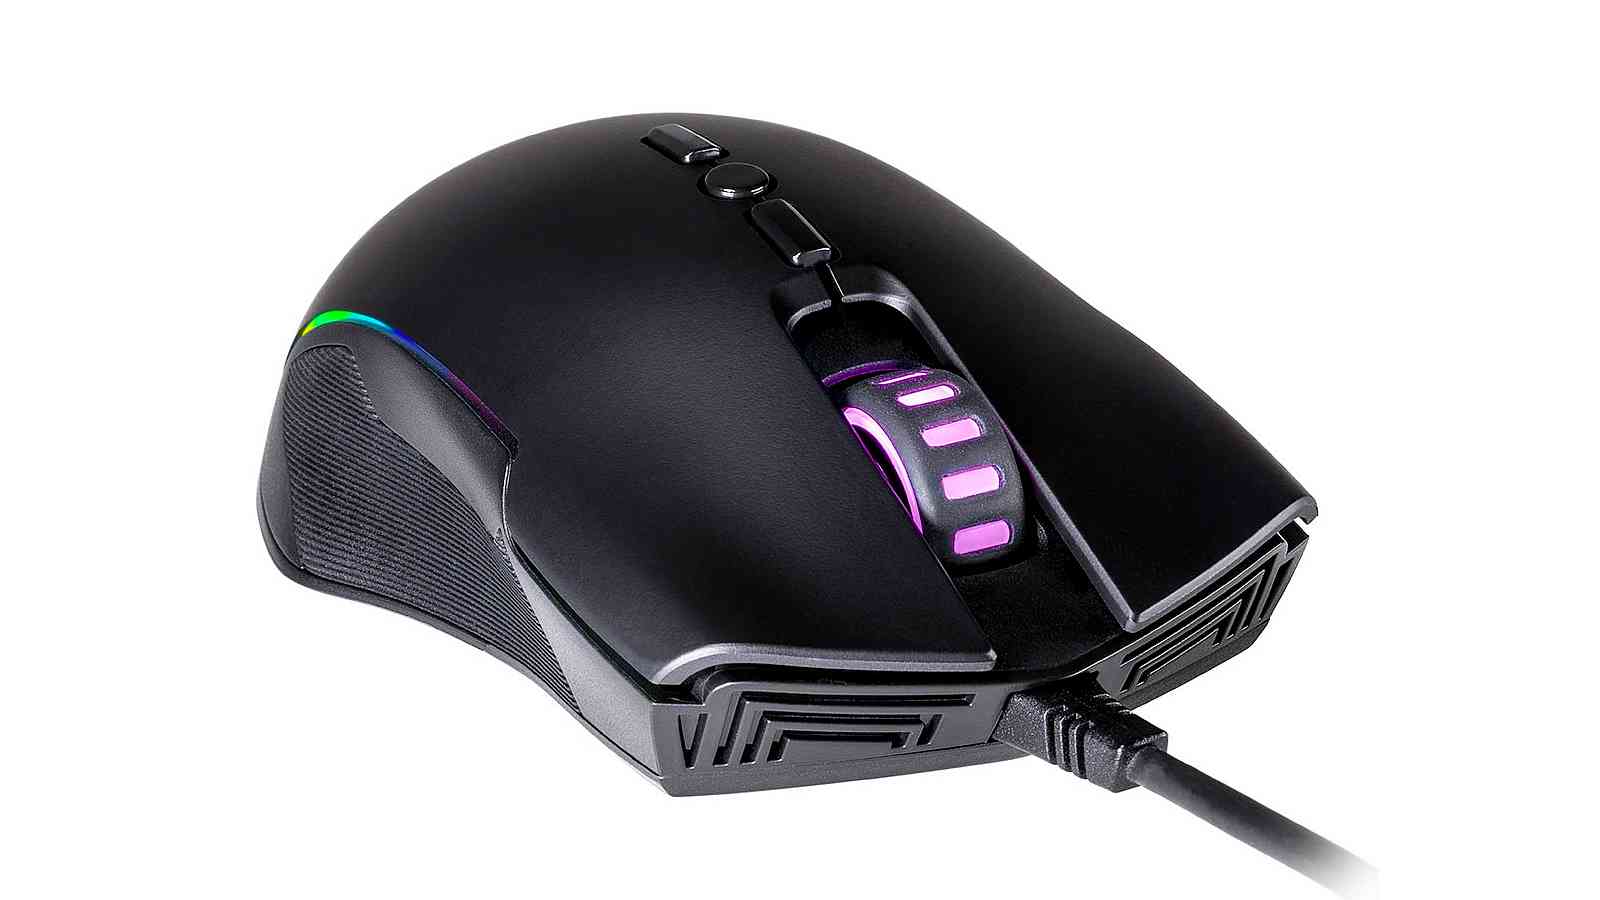 Cooler Master začne prodávat dostupnou myš s RGB a 10 000 DPI